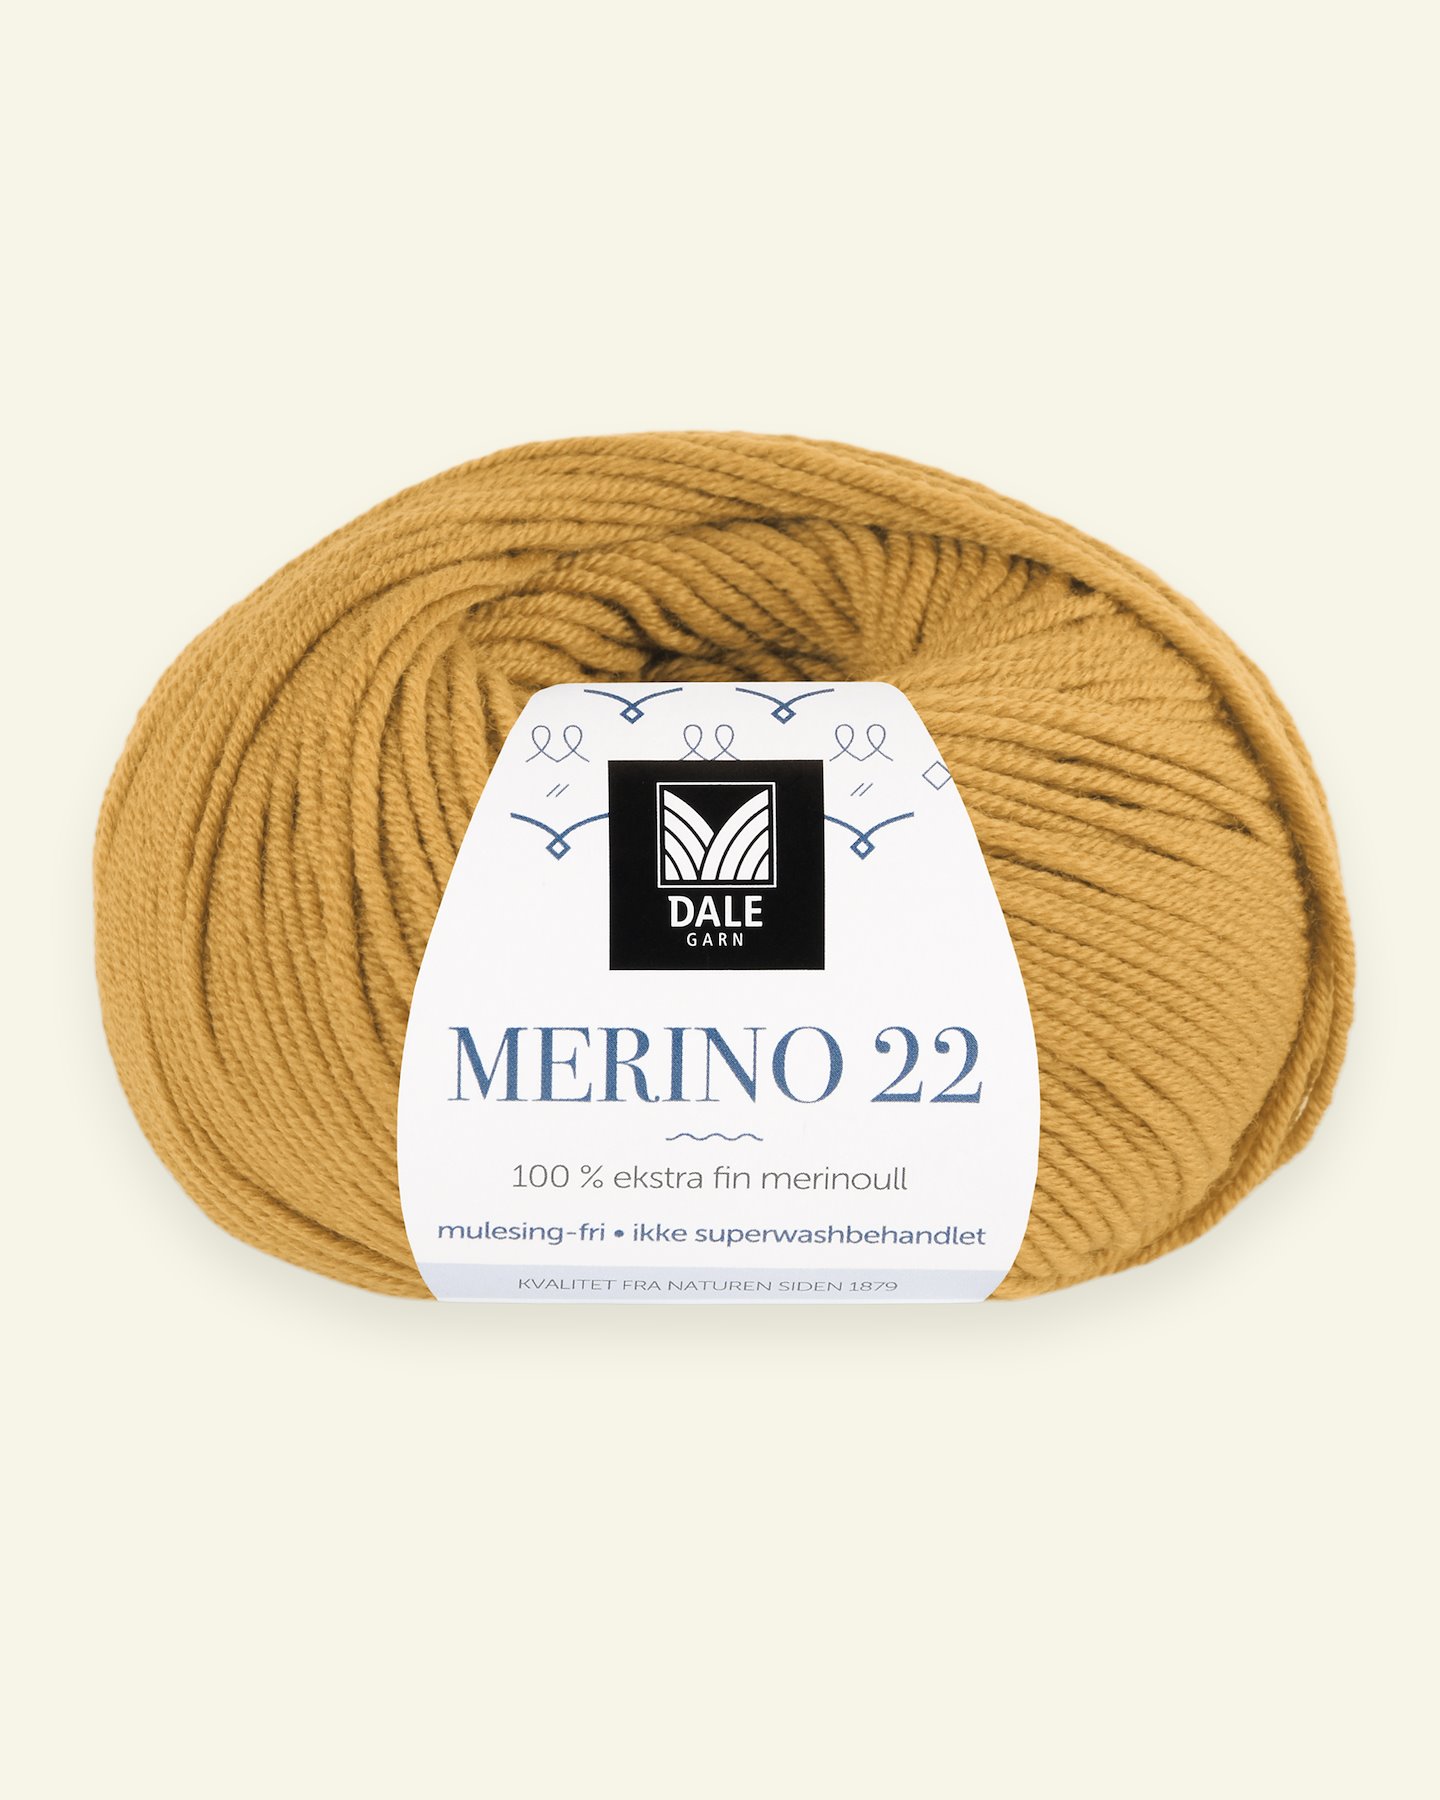 Dale Garn, 100% extra fine merino wool yarn, "Merino 22", sweetcorn yellow 90000381_pack